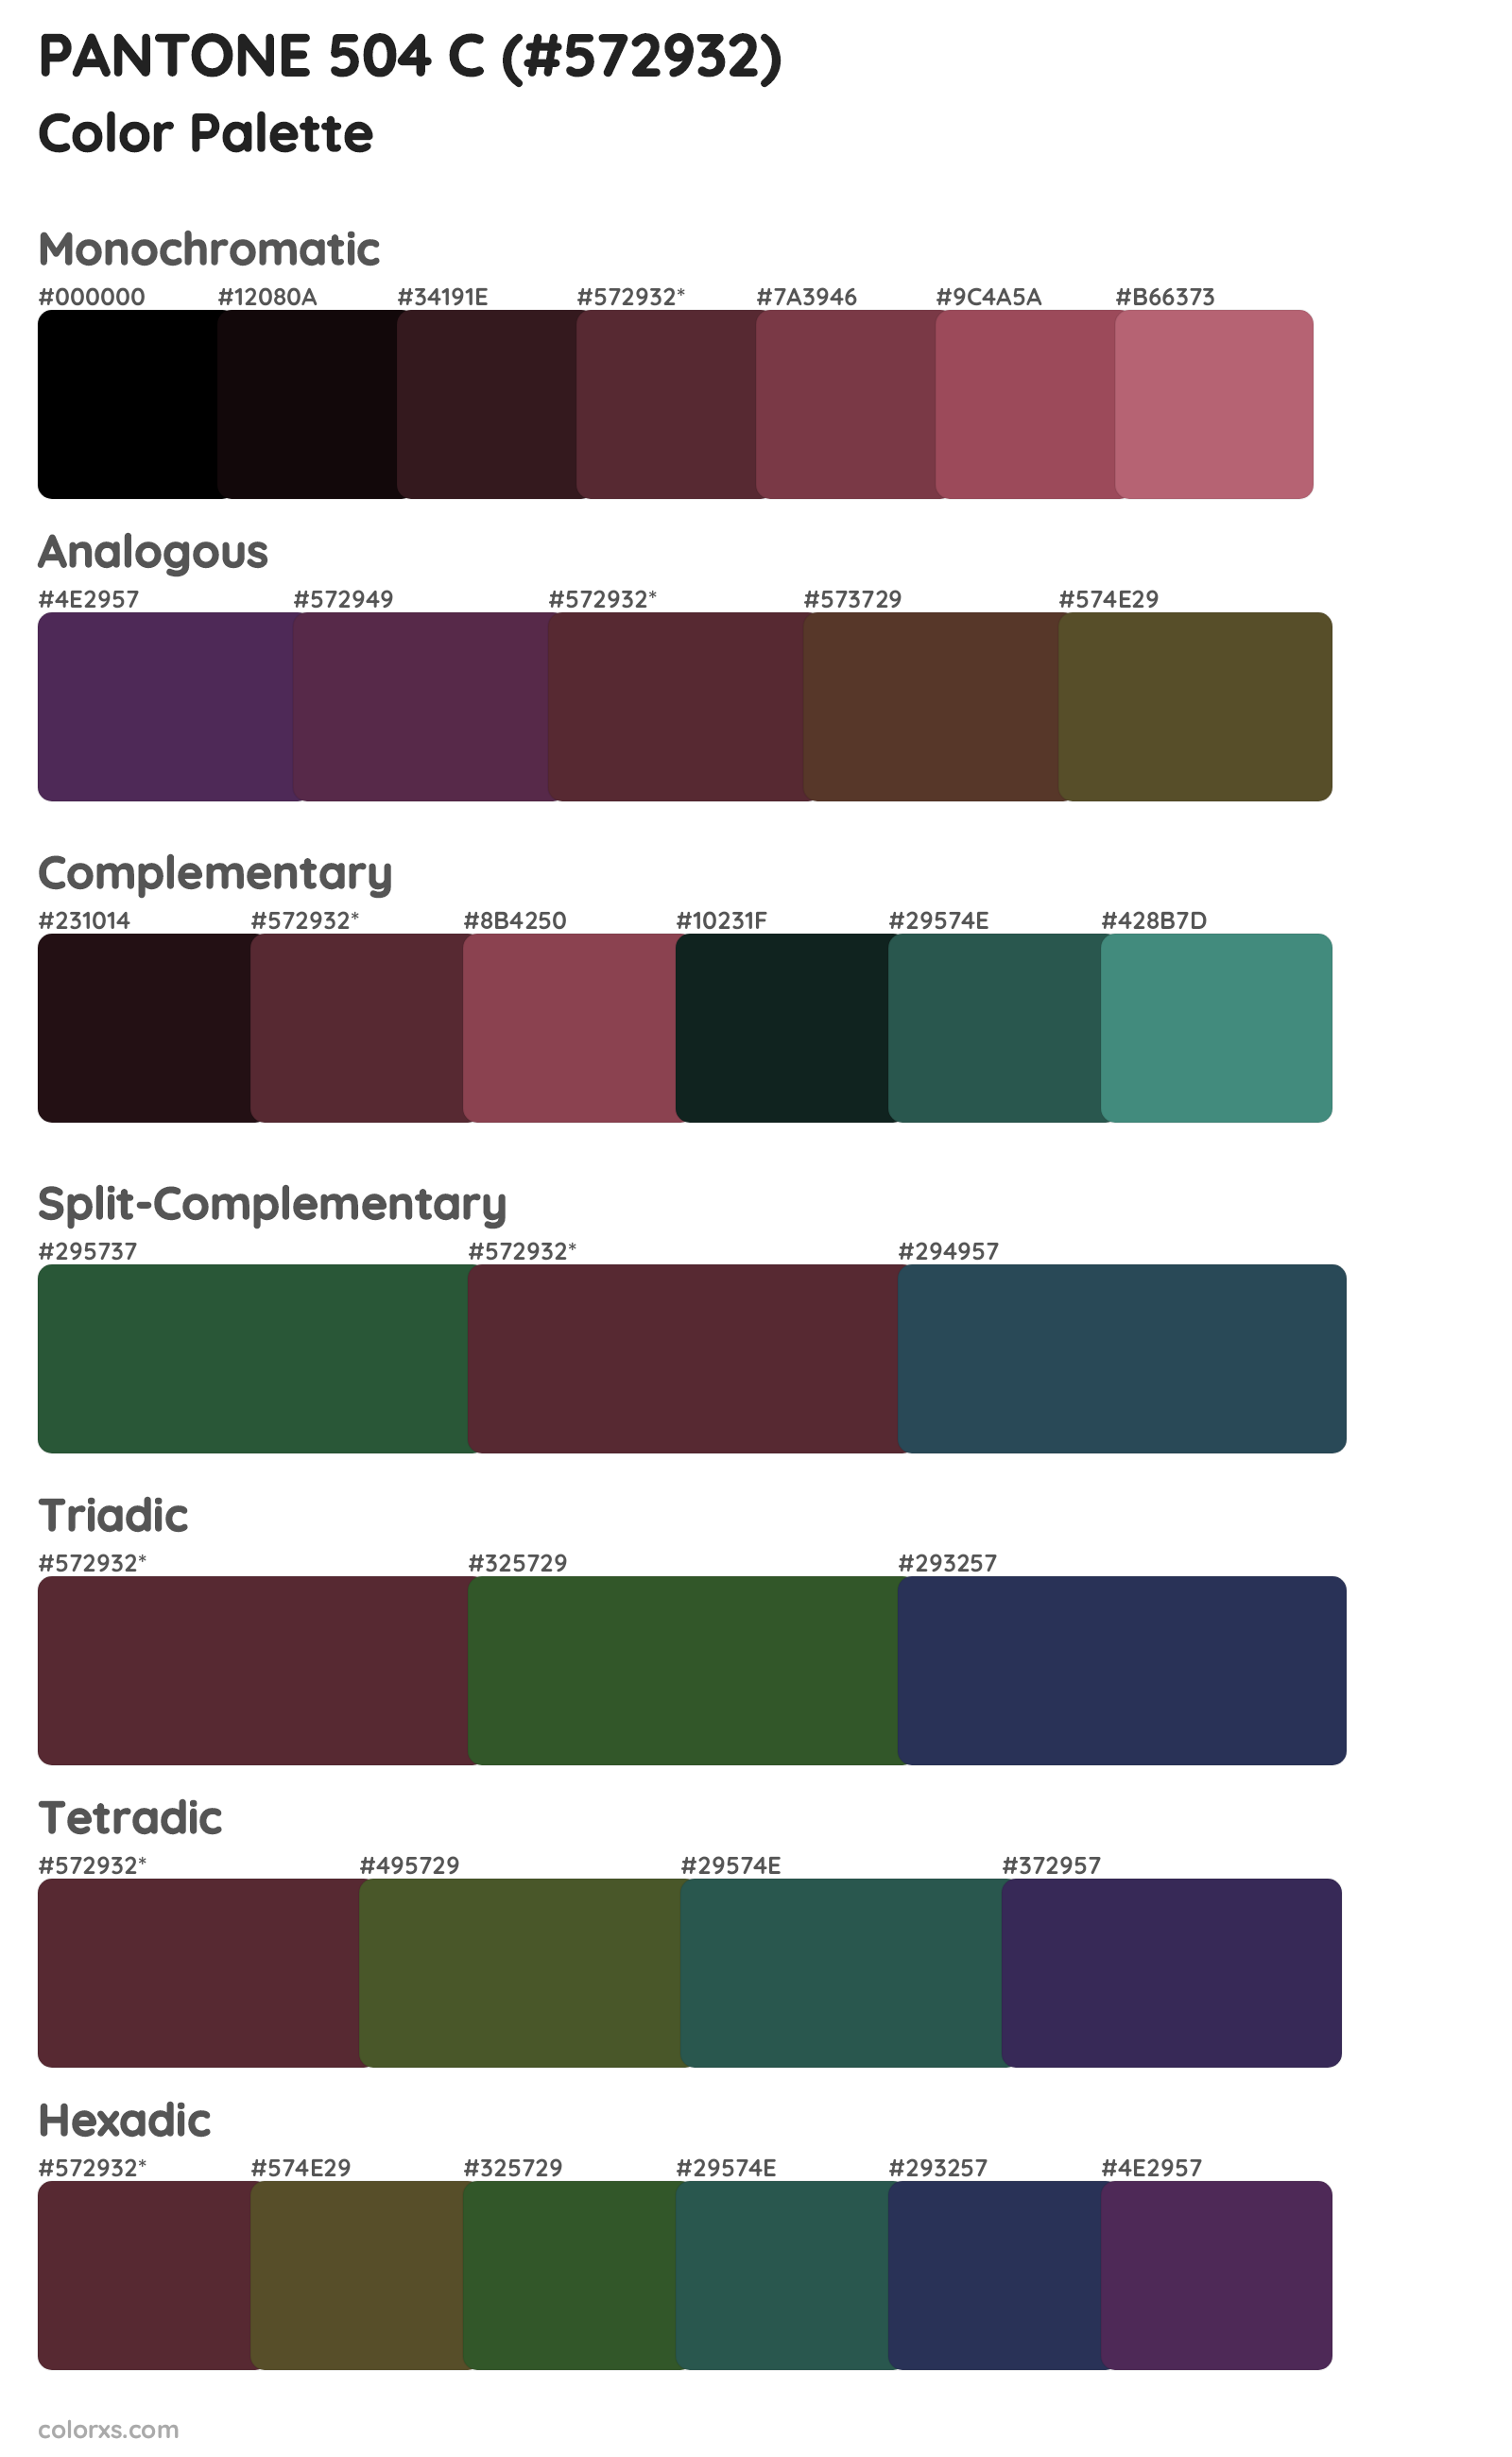 PANTONE 504 C Color Scheme Palettes